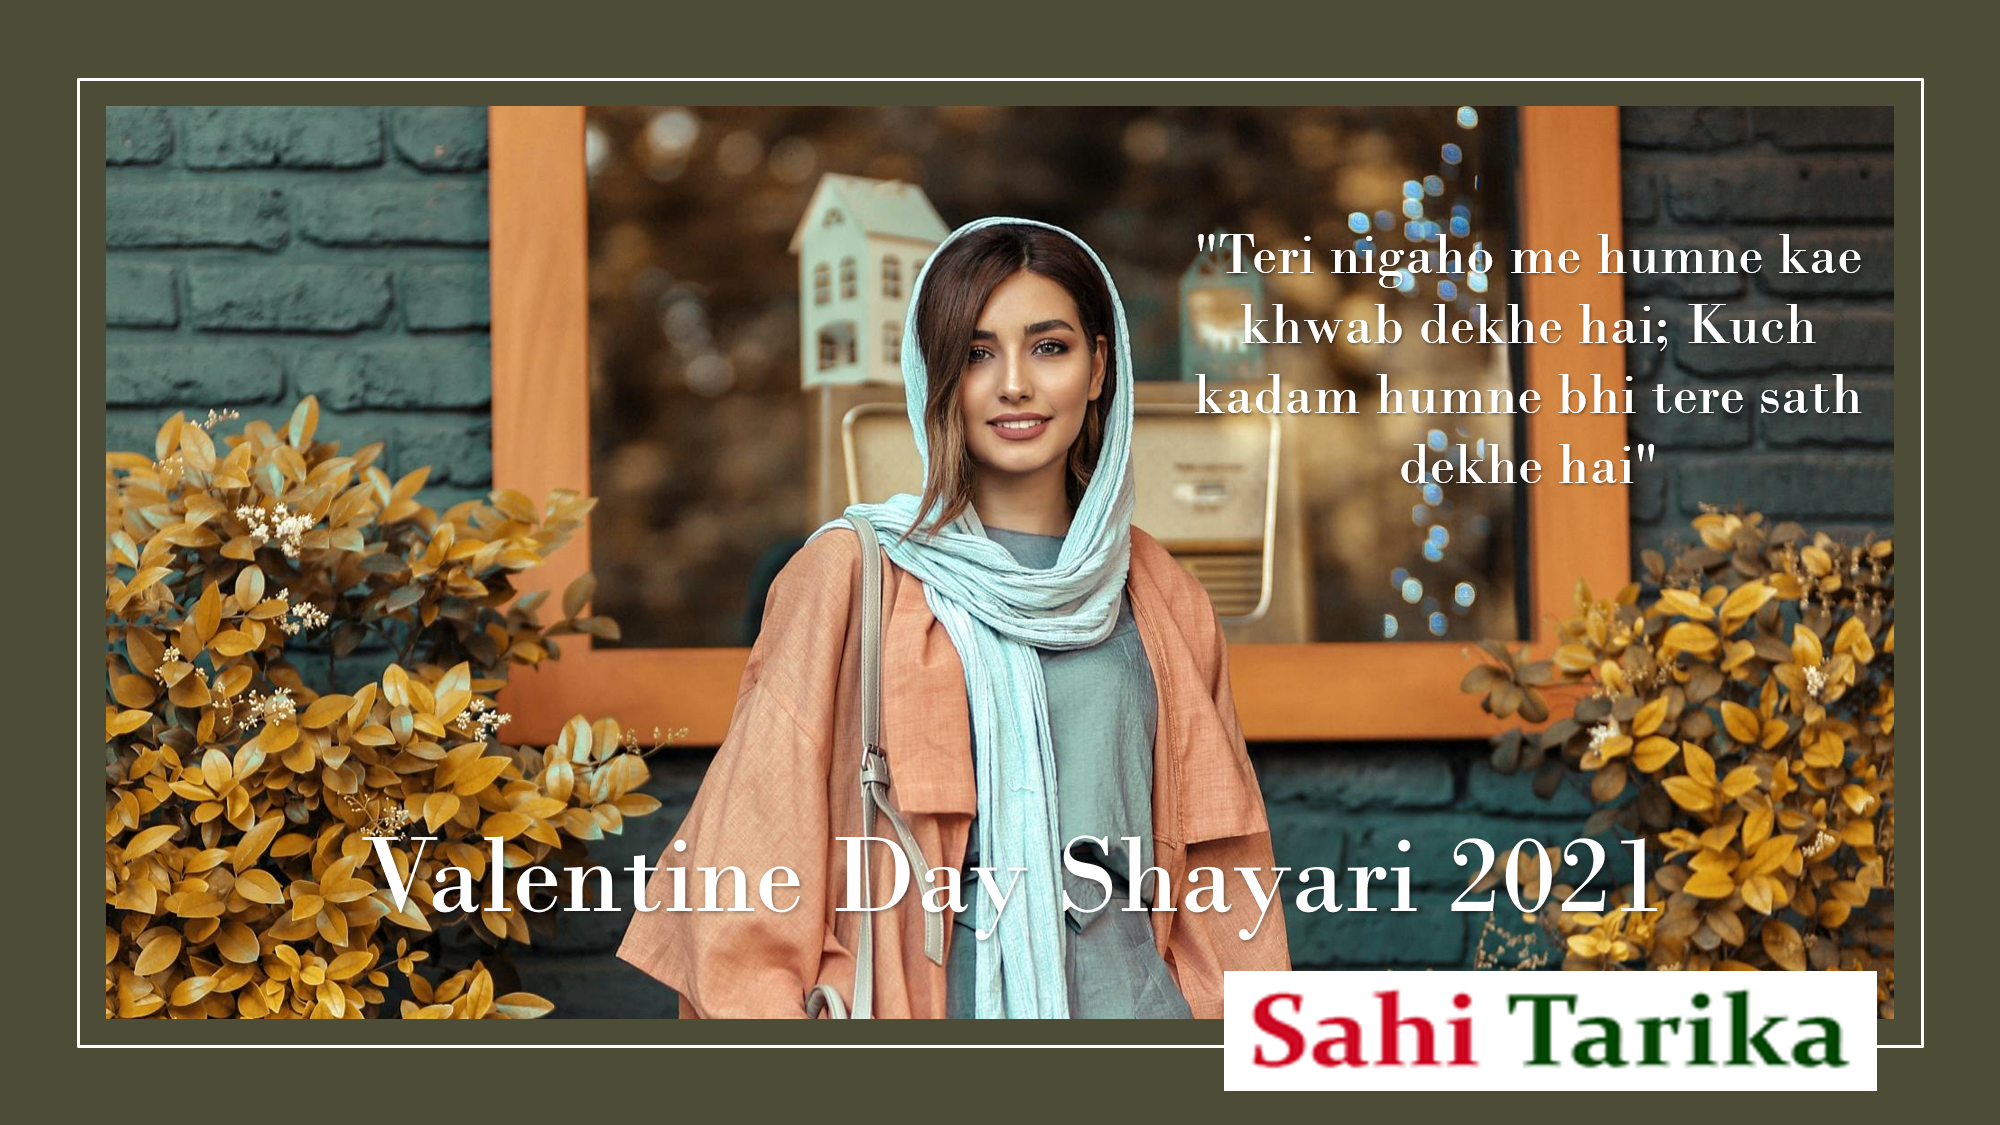 Photo of Valentine Day Shayari 2021